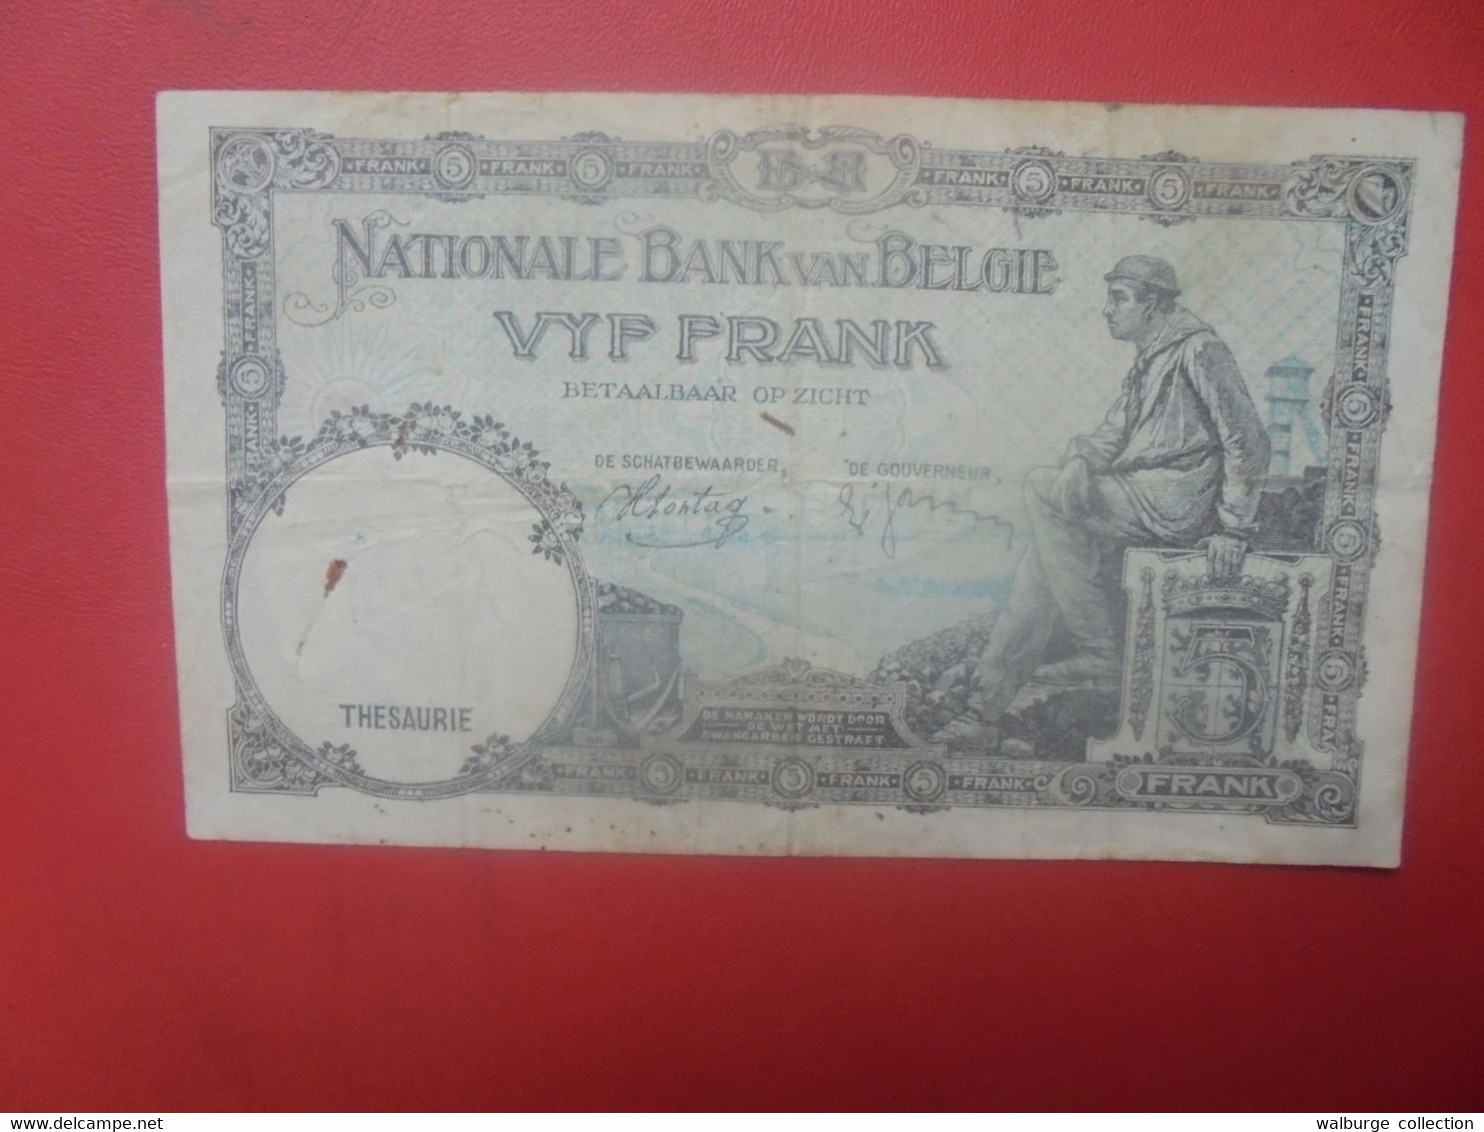 BELGIQUE 5 FRANCS 4-3-38 Circuler (B.27) - 5 Francs